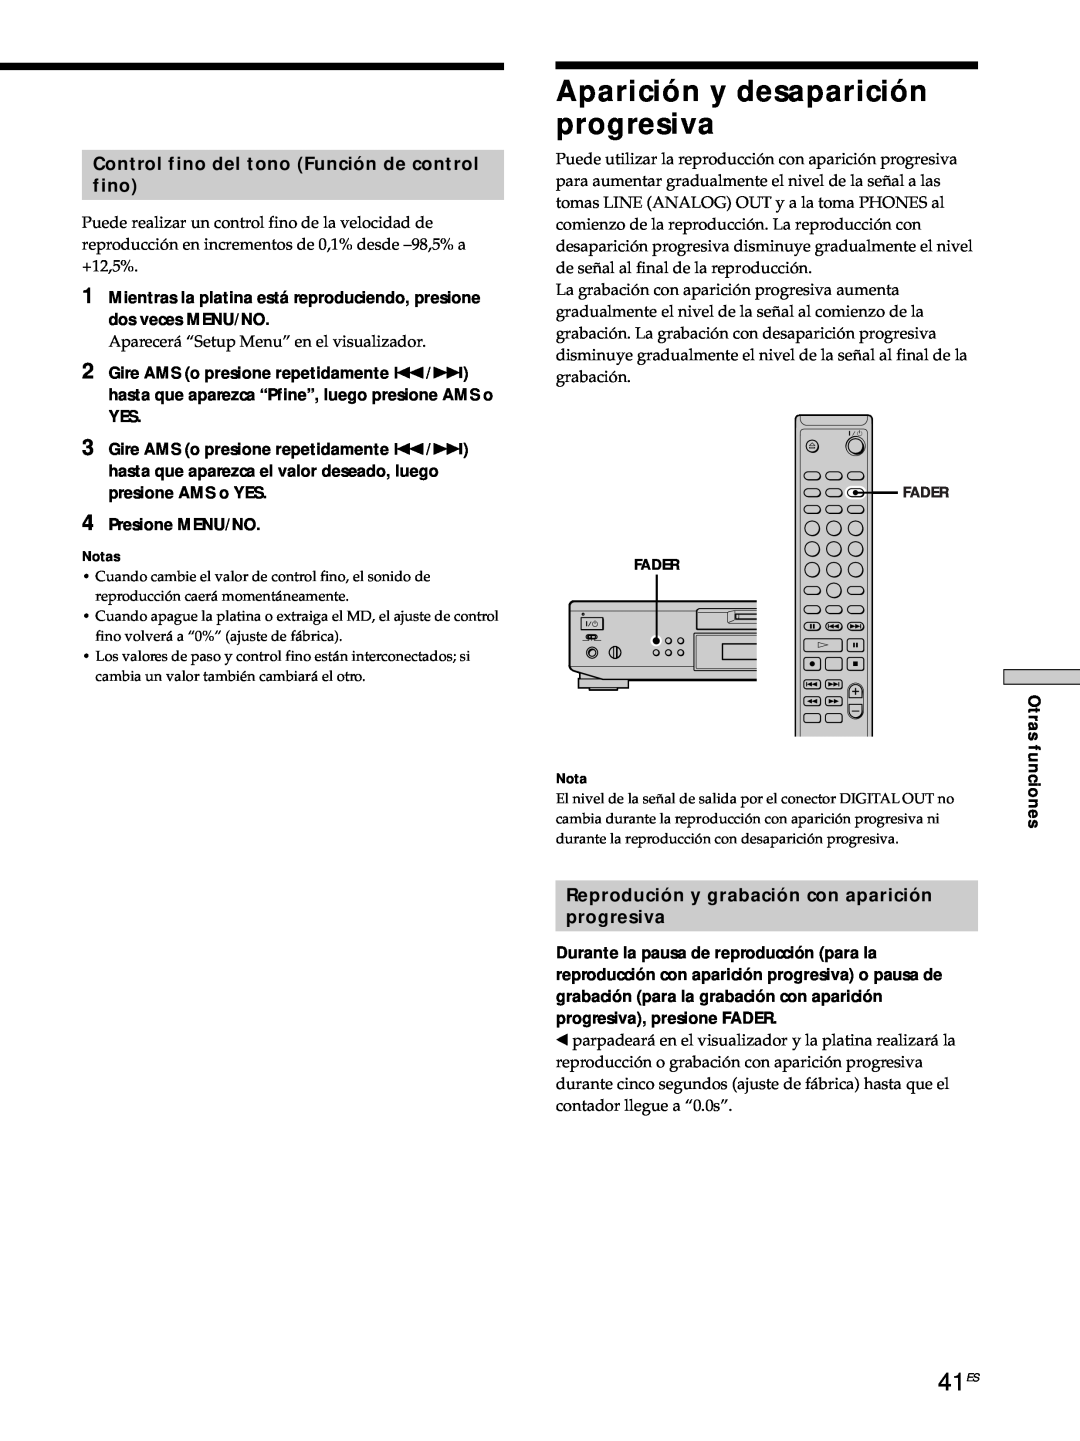 Sony MDS-JE530 manual Aparición y desaparición progresiva, 41ES, Control fino del tono Función de control fino 